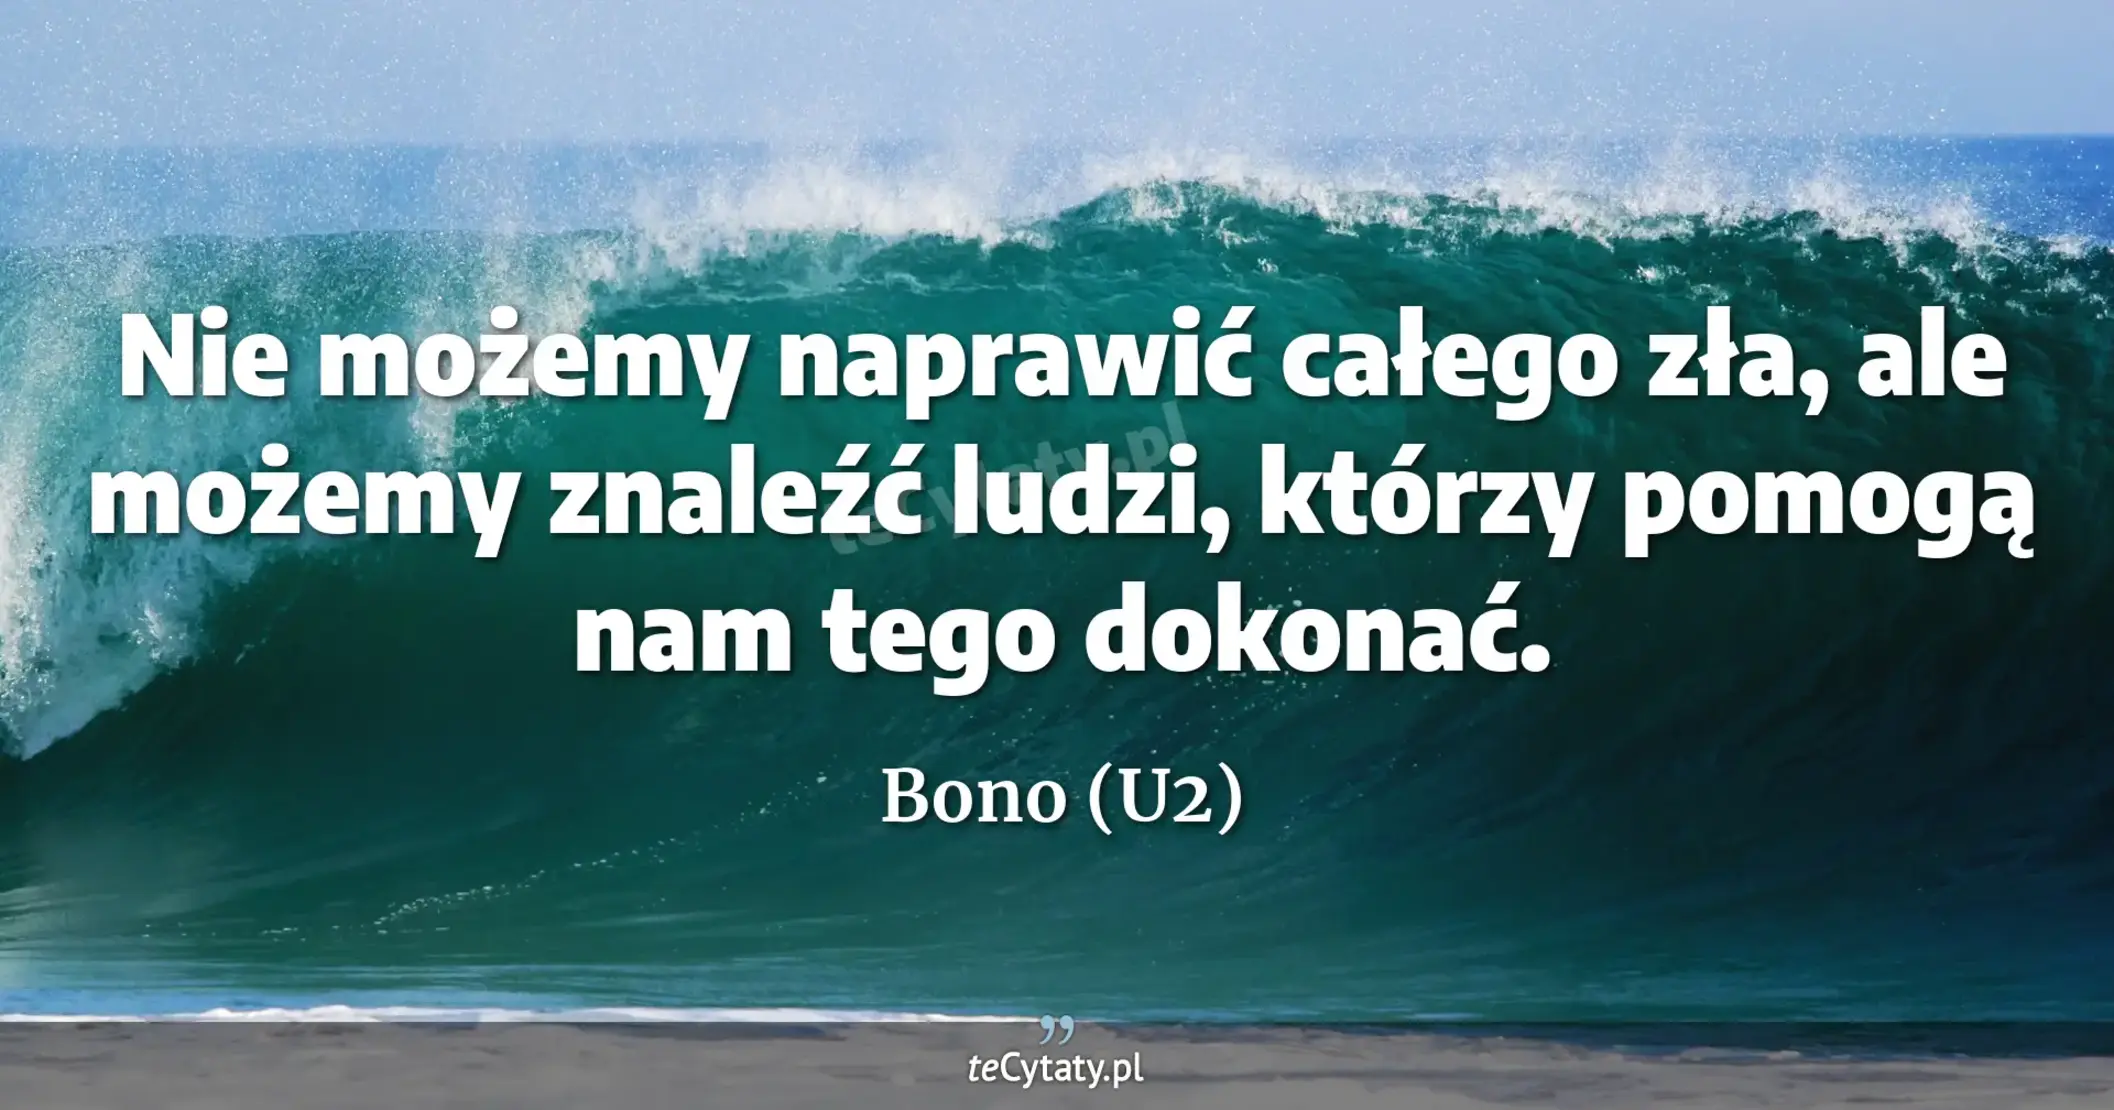 Nie możemy naprawić całego zła, ale możemy znaleźć ludzi, którzy pomogą nam tego dokonać. - Bono (U2)